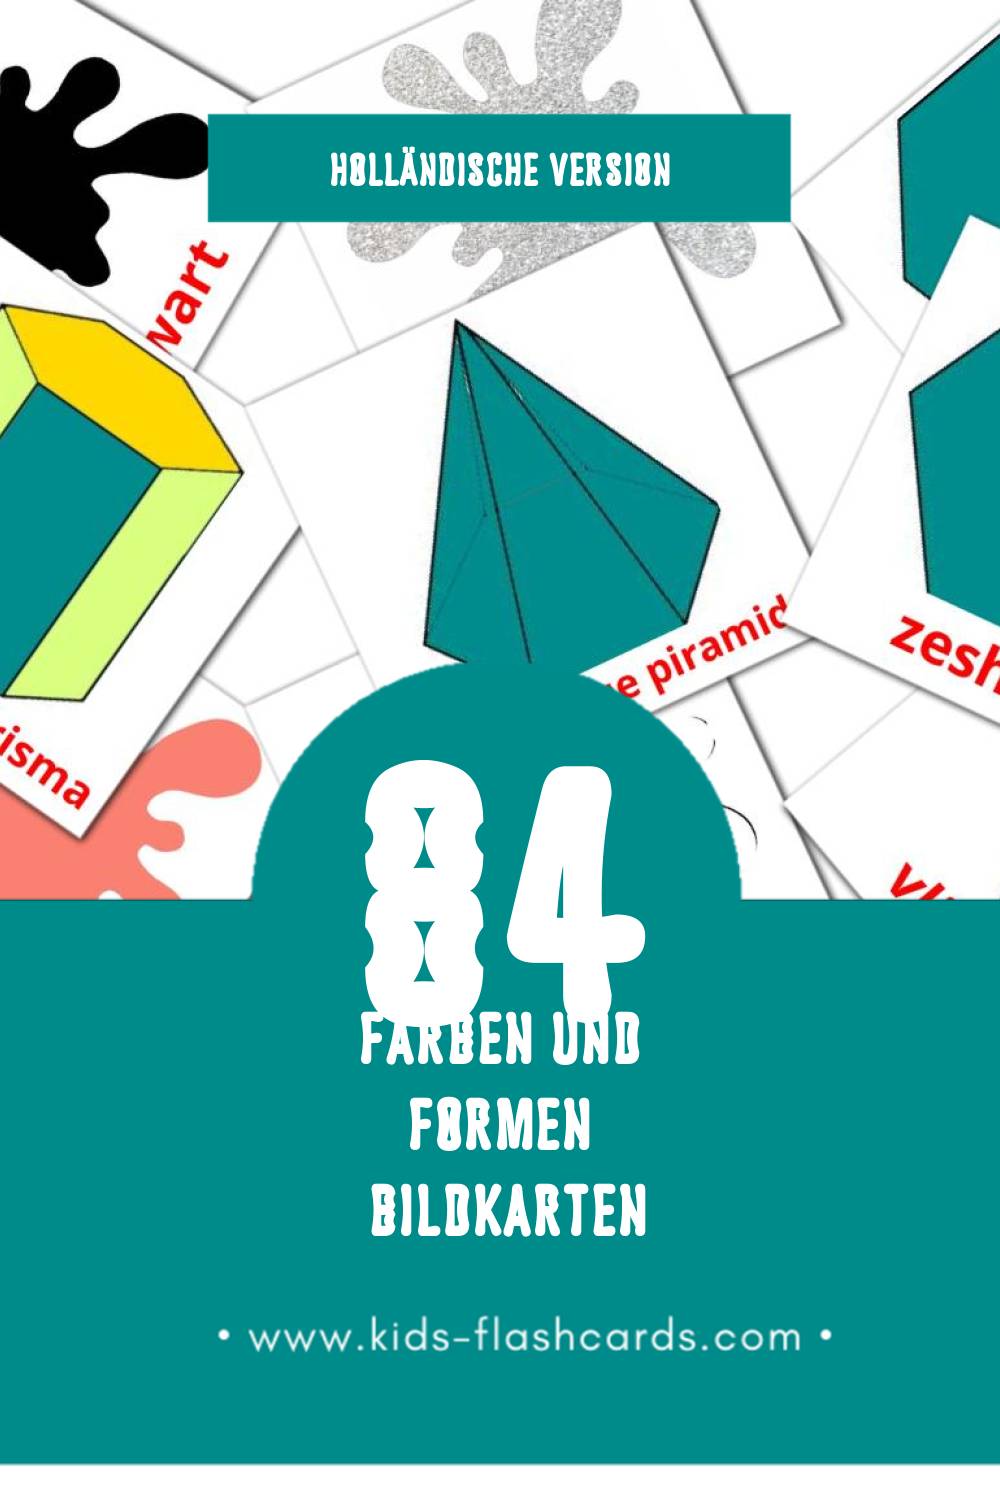 Visual Kleuren en vormen Flashcards für Kleinkinder (84 Karten in Holländisch)